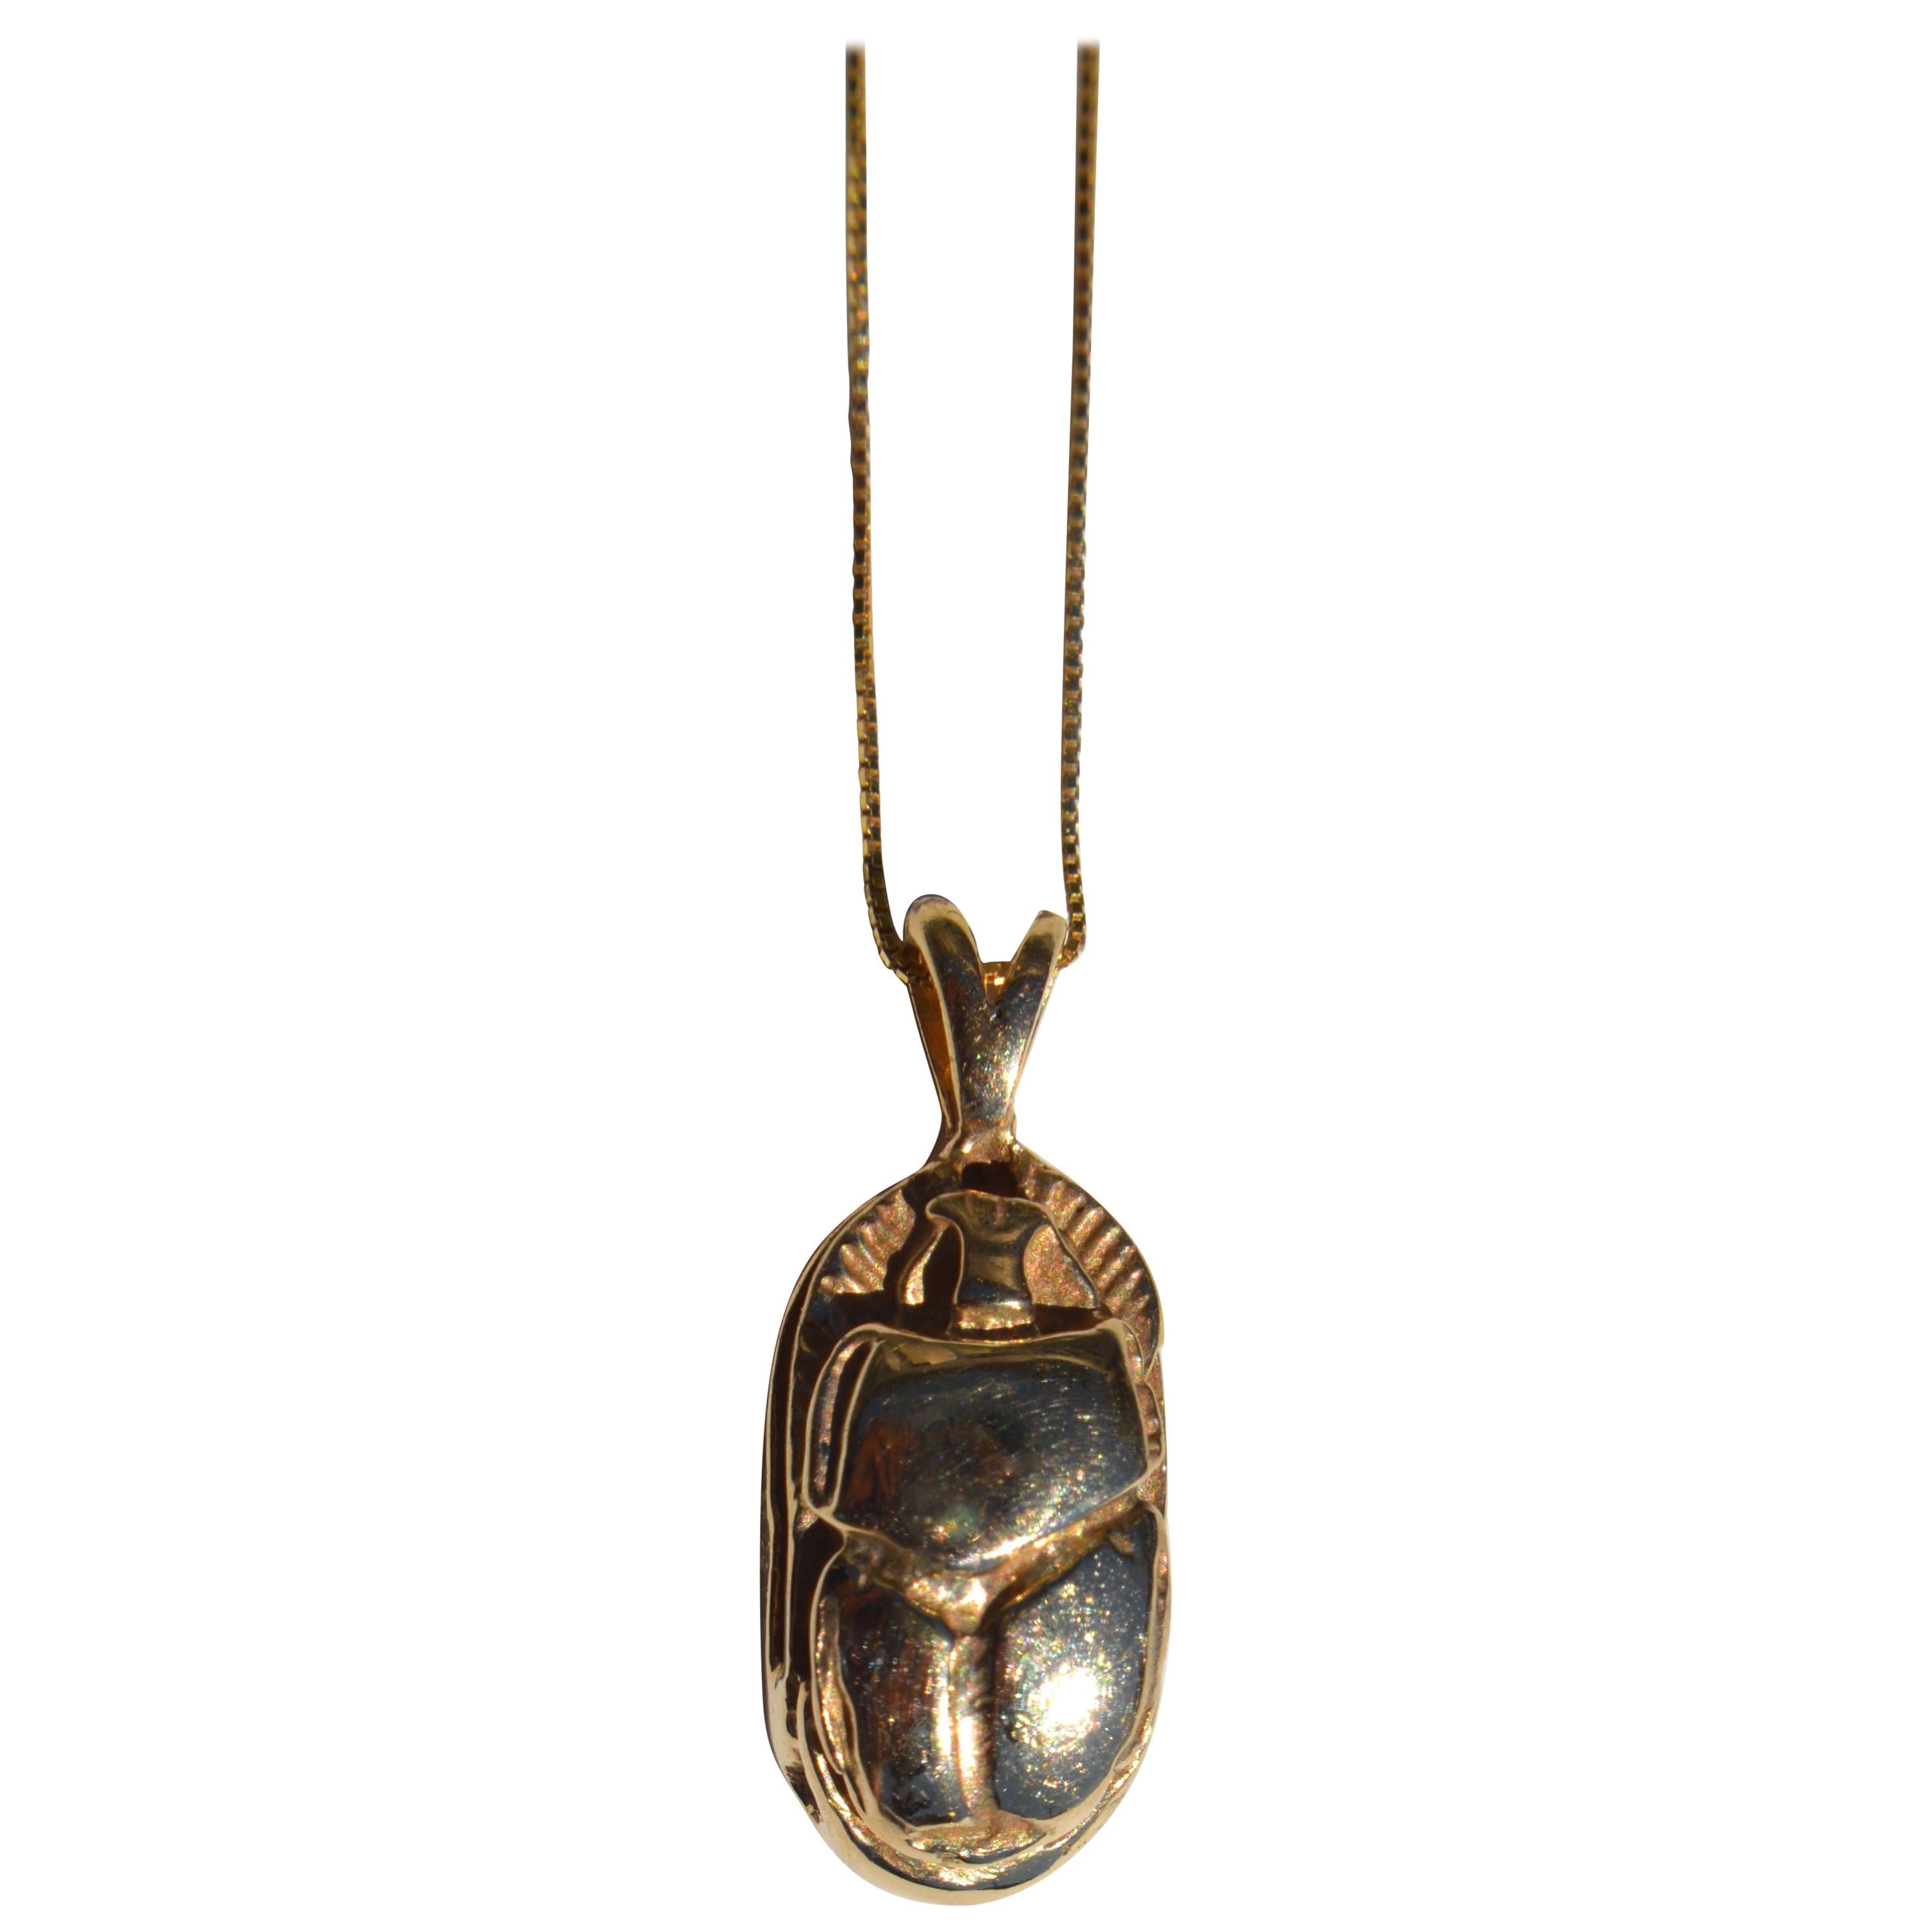 Ingram Cecil 14 Karat Gold Scarab Beetle Pendant Necklace For Sale